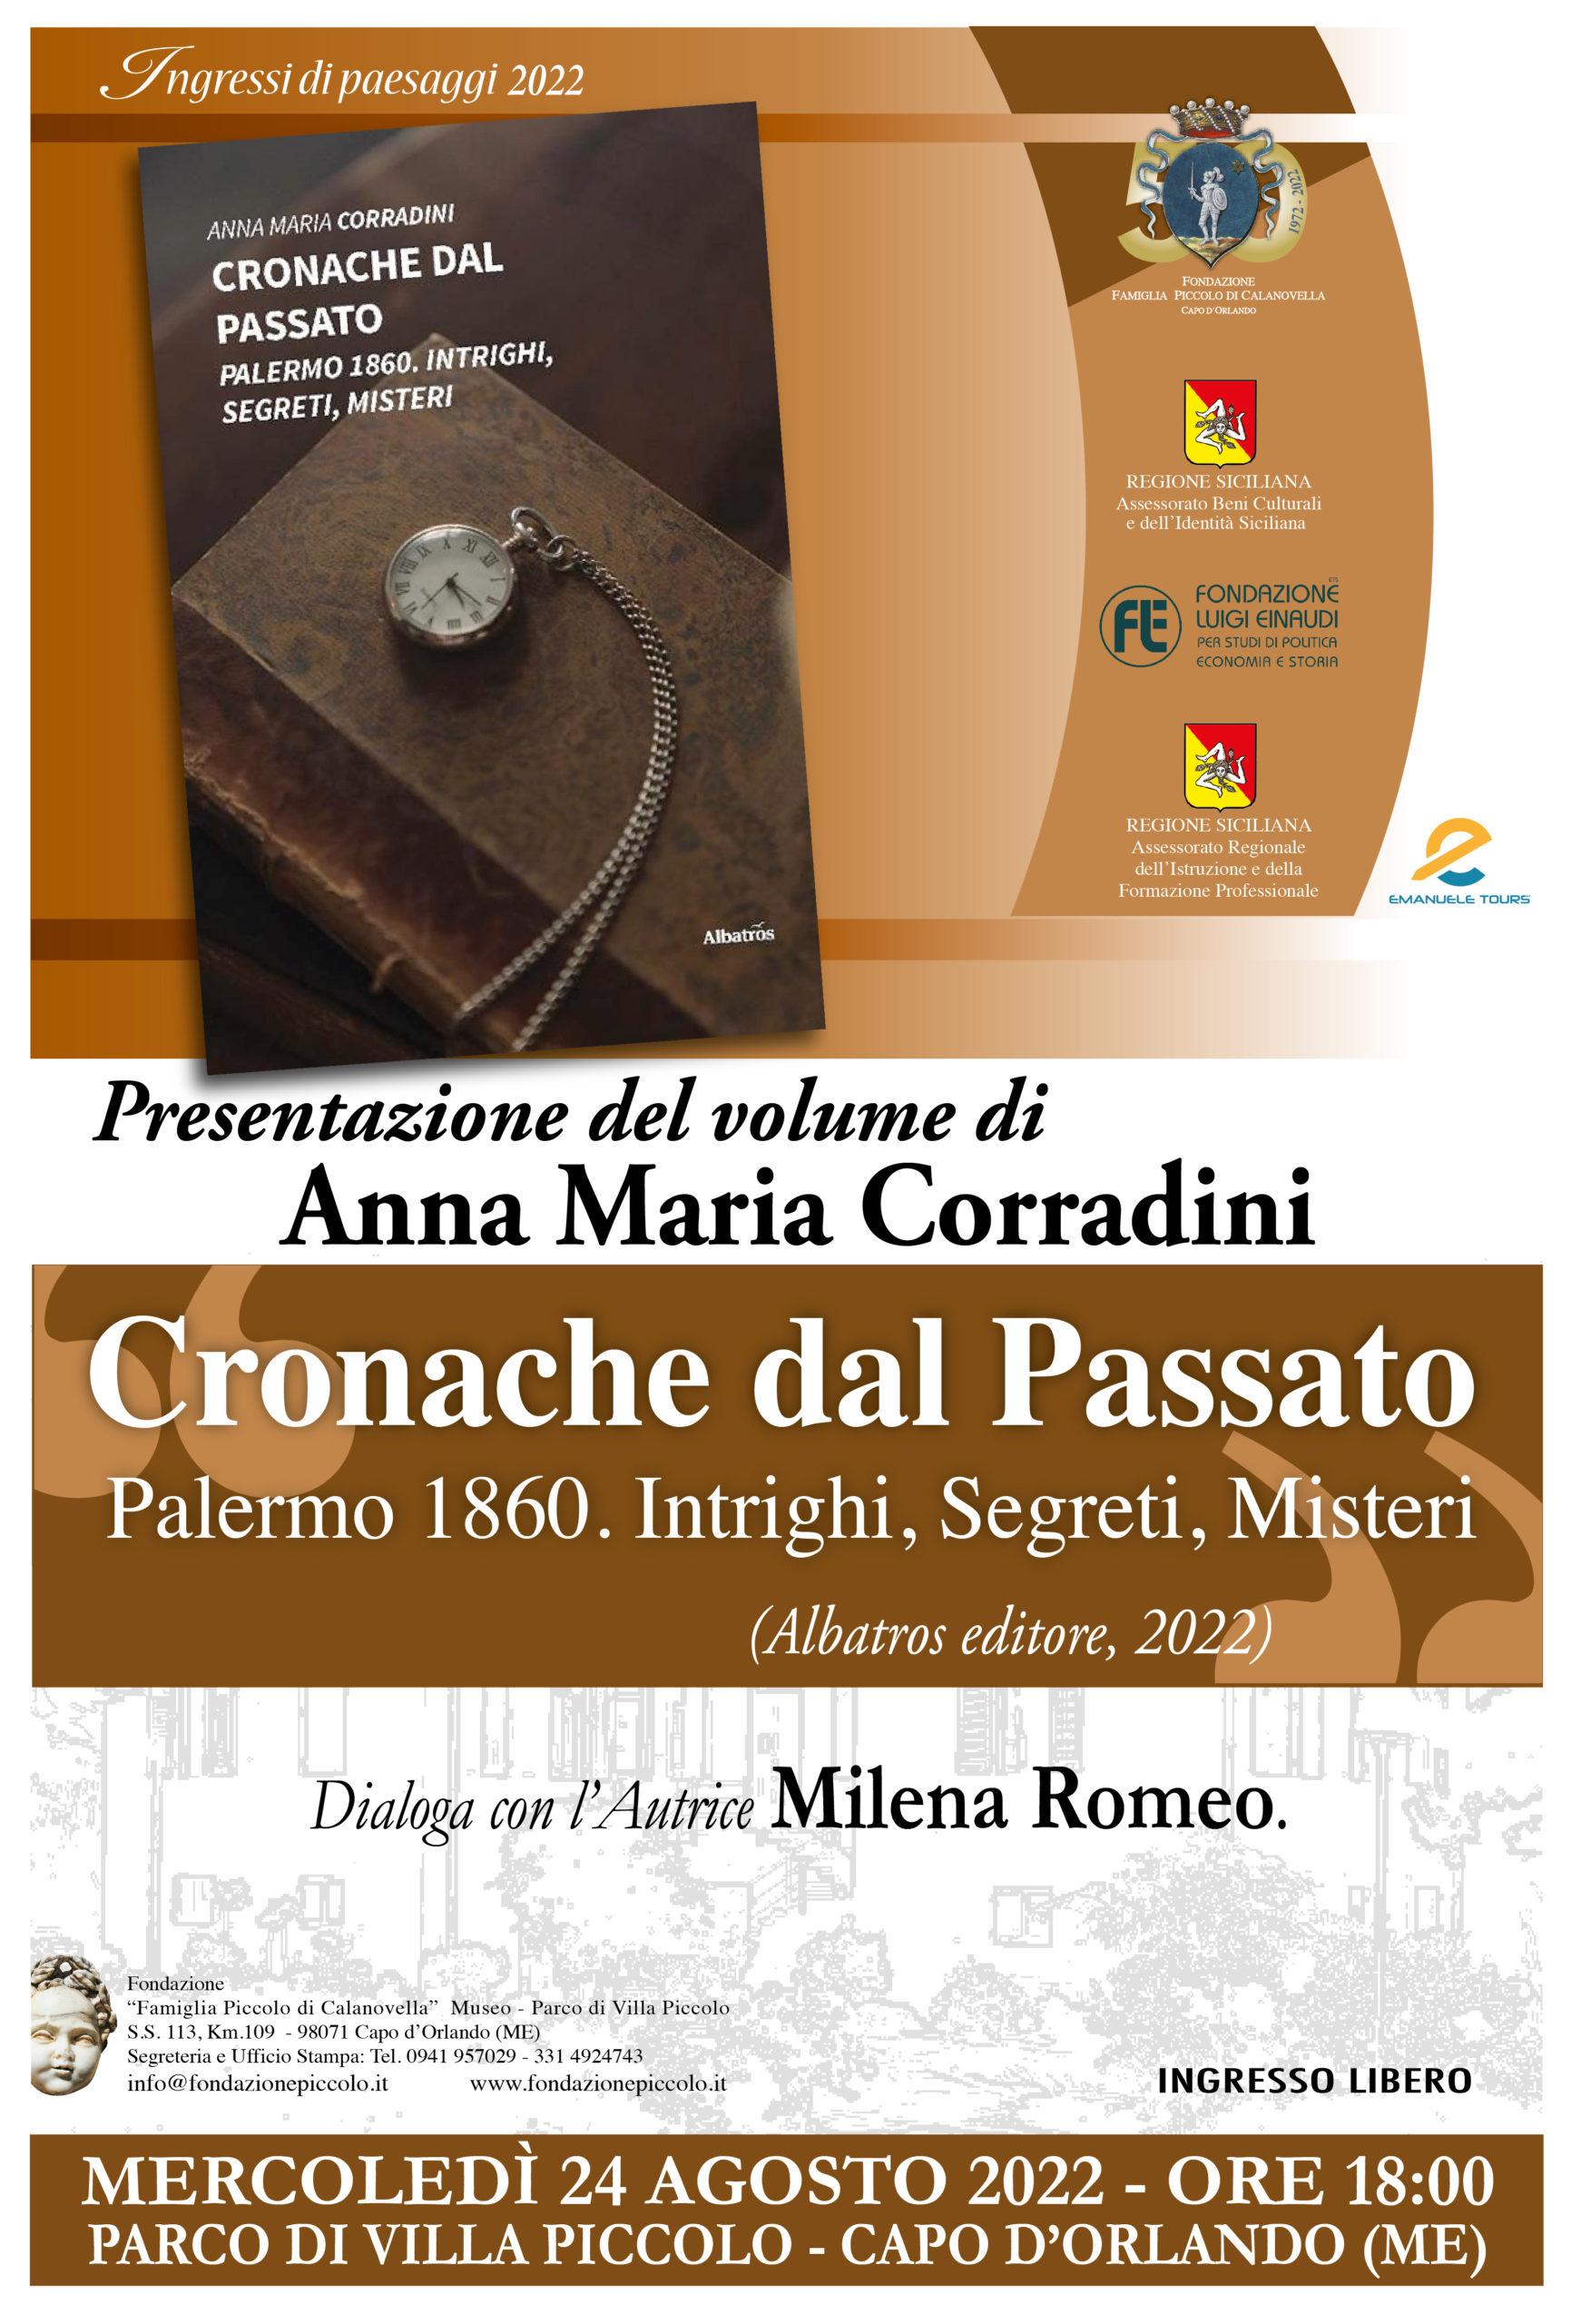 Presentazione del libro “Cronache dal passato. Palermo 1860. Intrighi, Segreti. Misteri” a Villa Piccolo